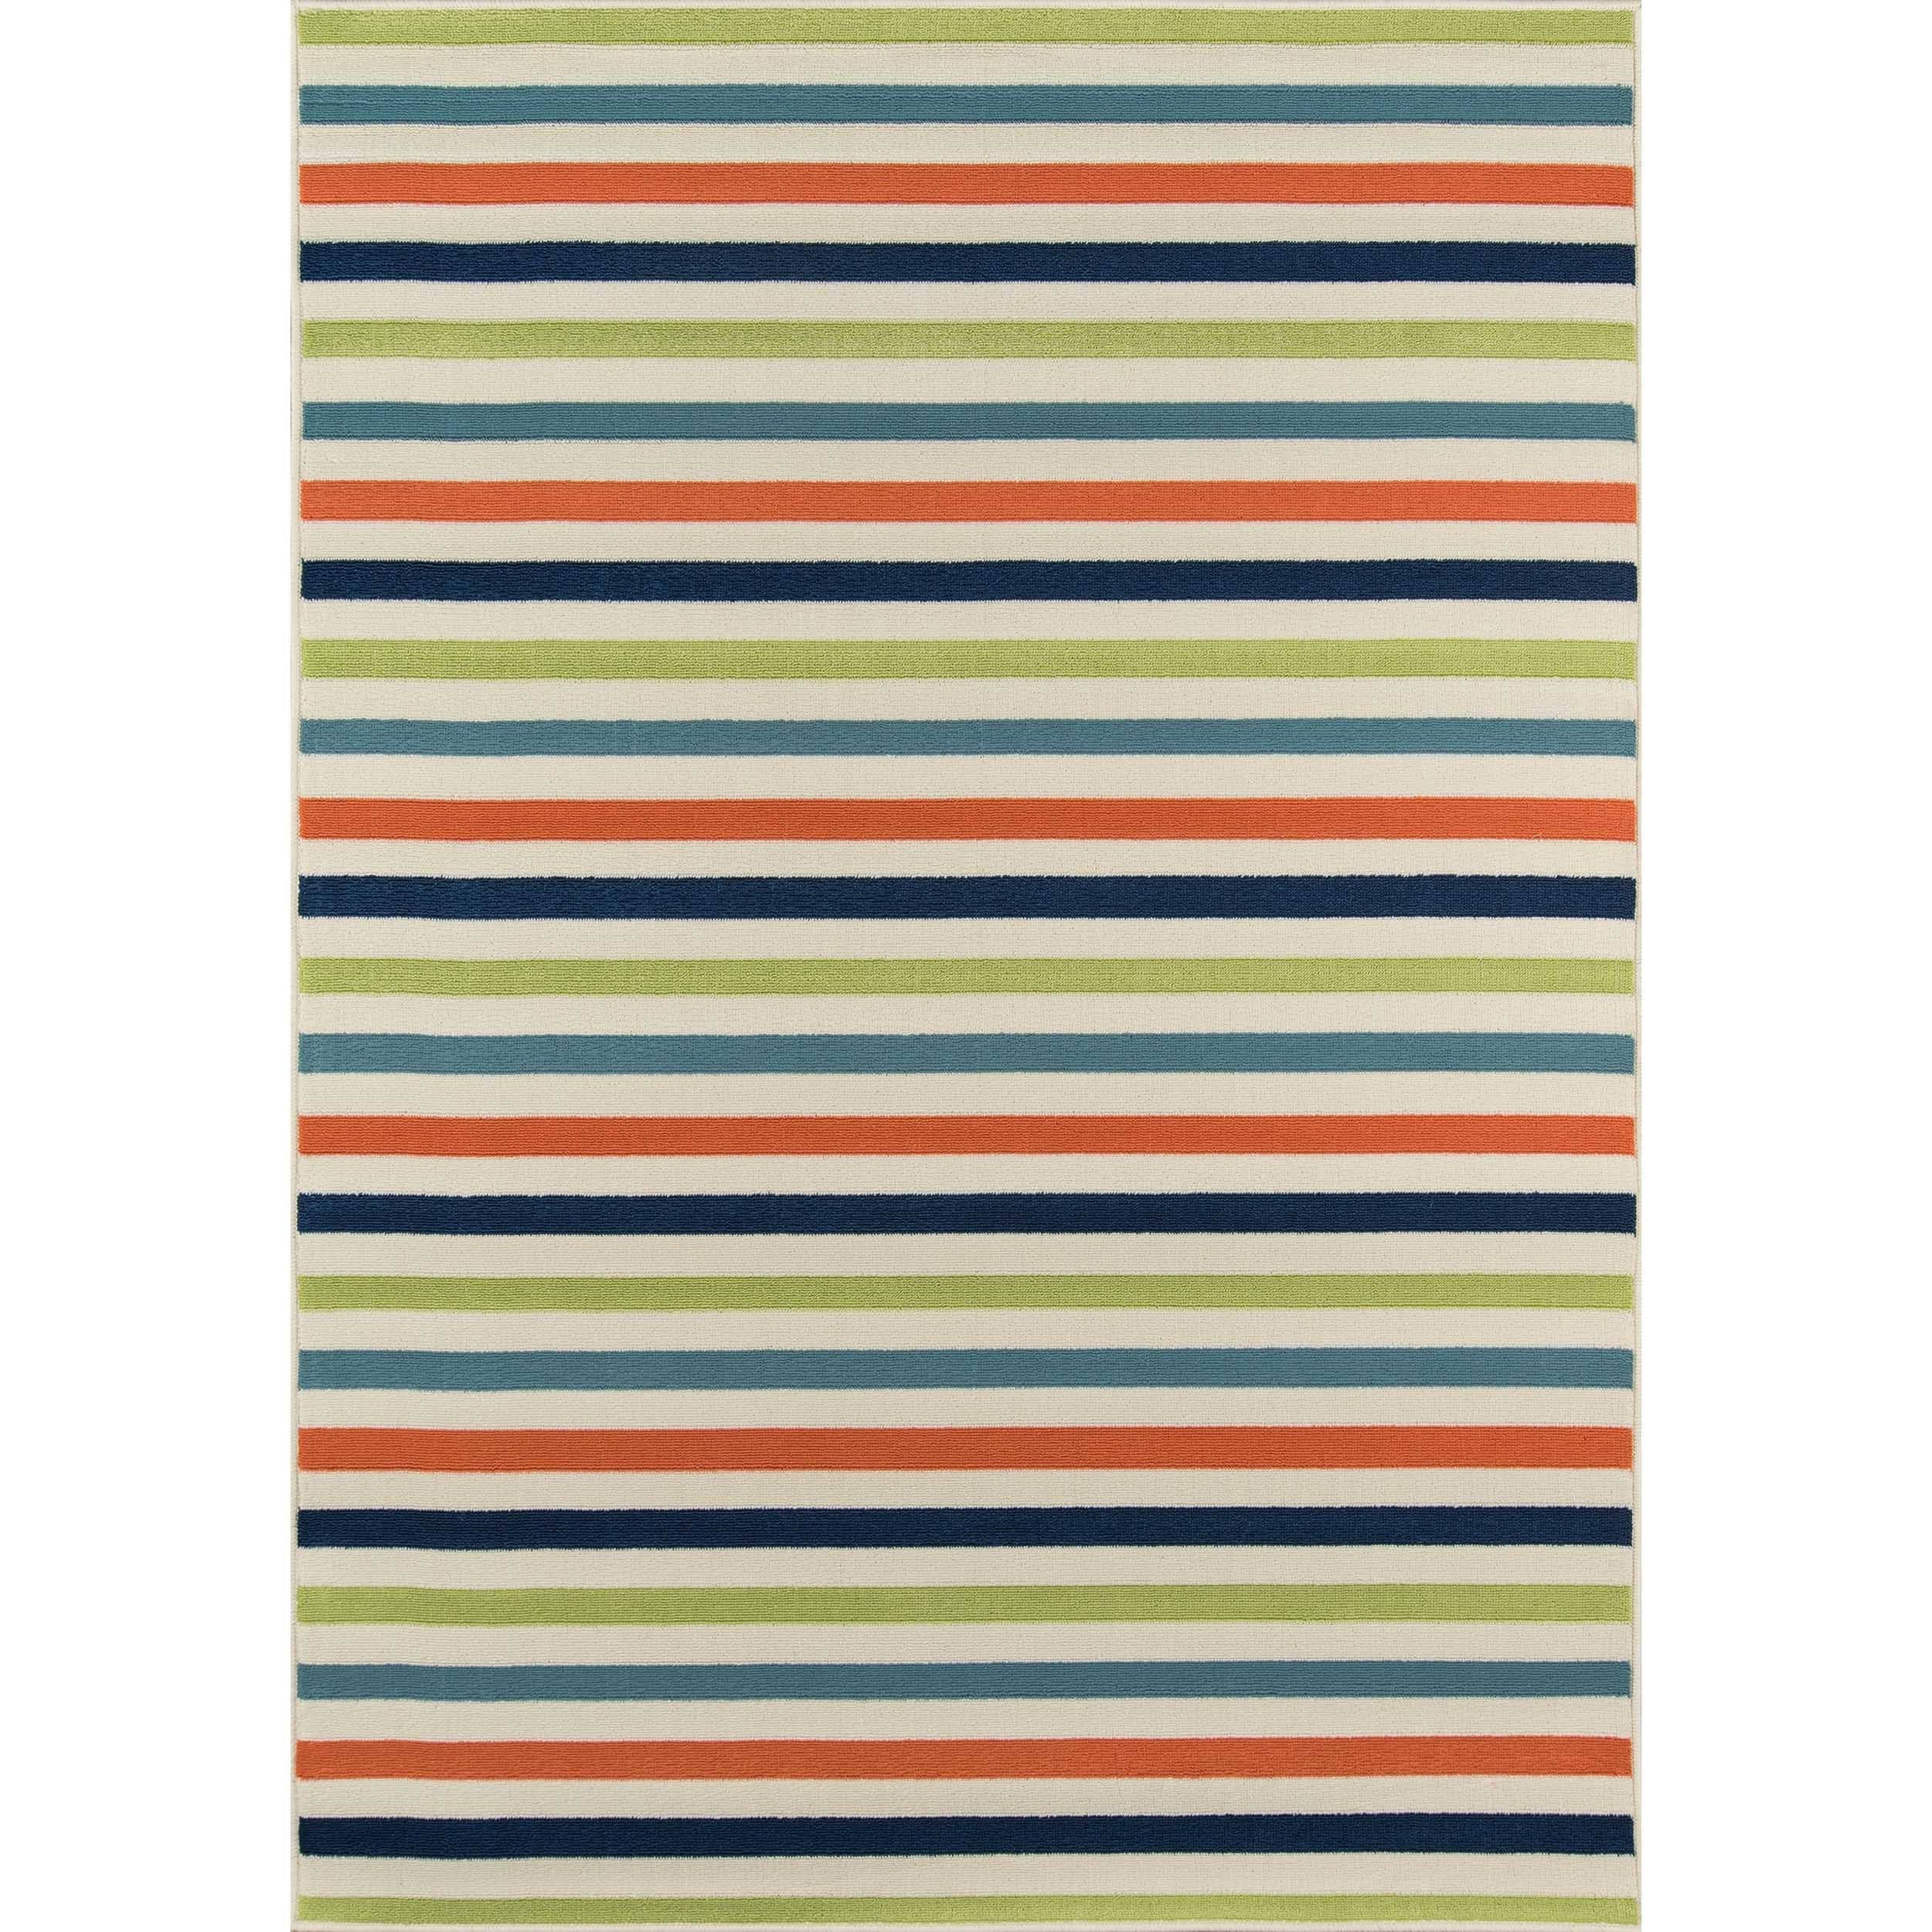 Indoor/outdoor Multicolor Striped Rug (710 X 1010)